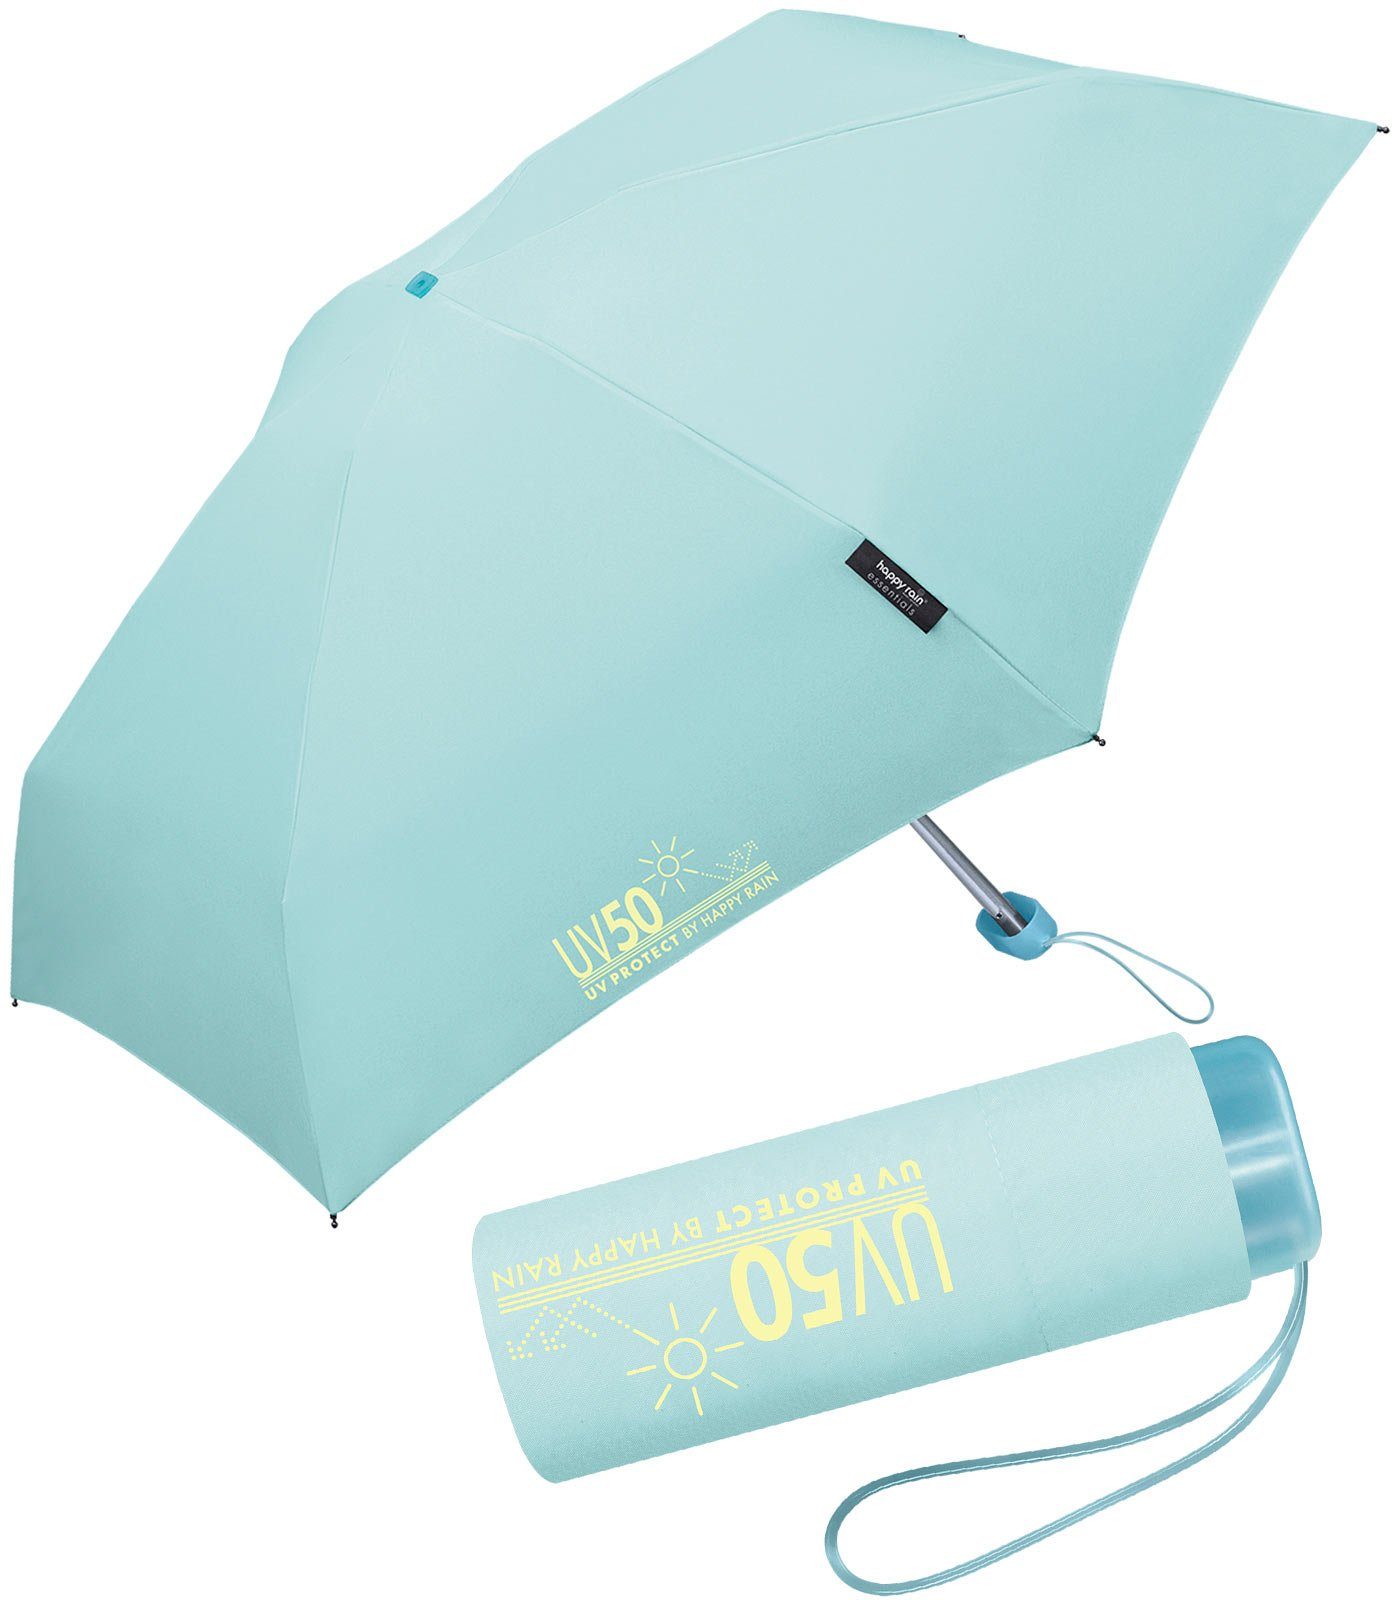 HAPPY RAIN Taschenregenschirm UV-Protect UV50 Ultra Mini Flat mit Sonnenschutz, winzig klein für unterwegs - schützt vor Sonne und Regen